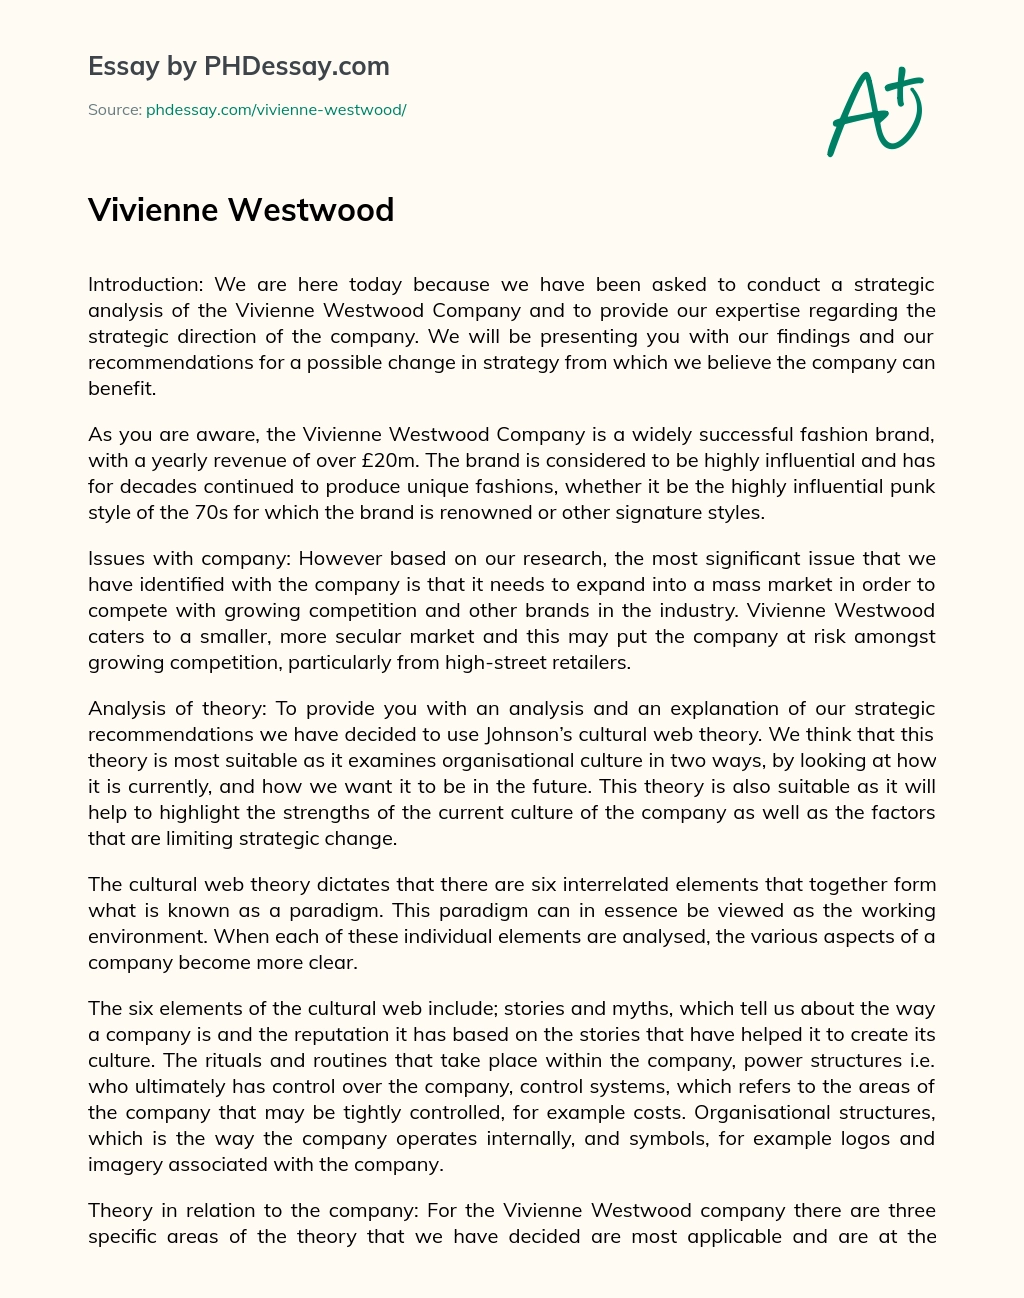 Vivienne Westwood essay